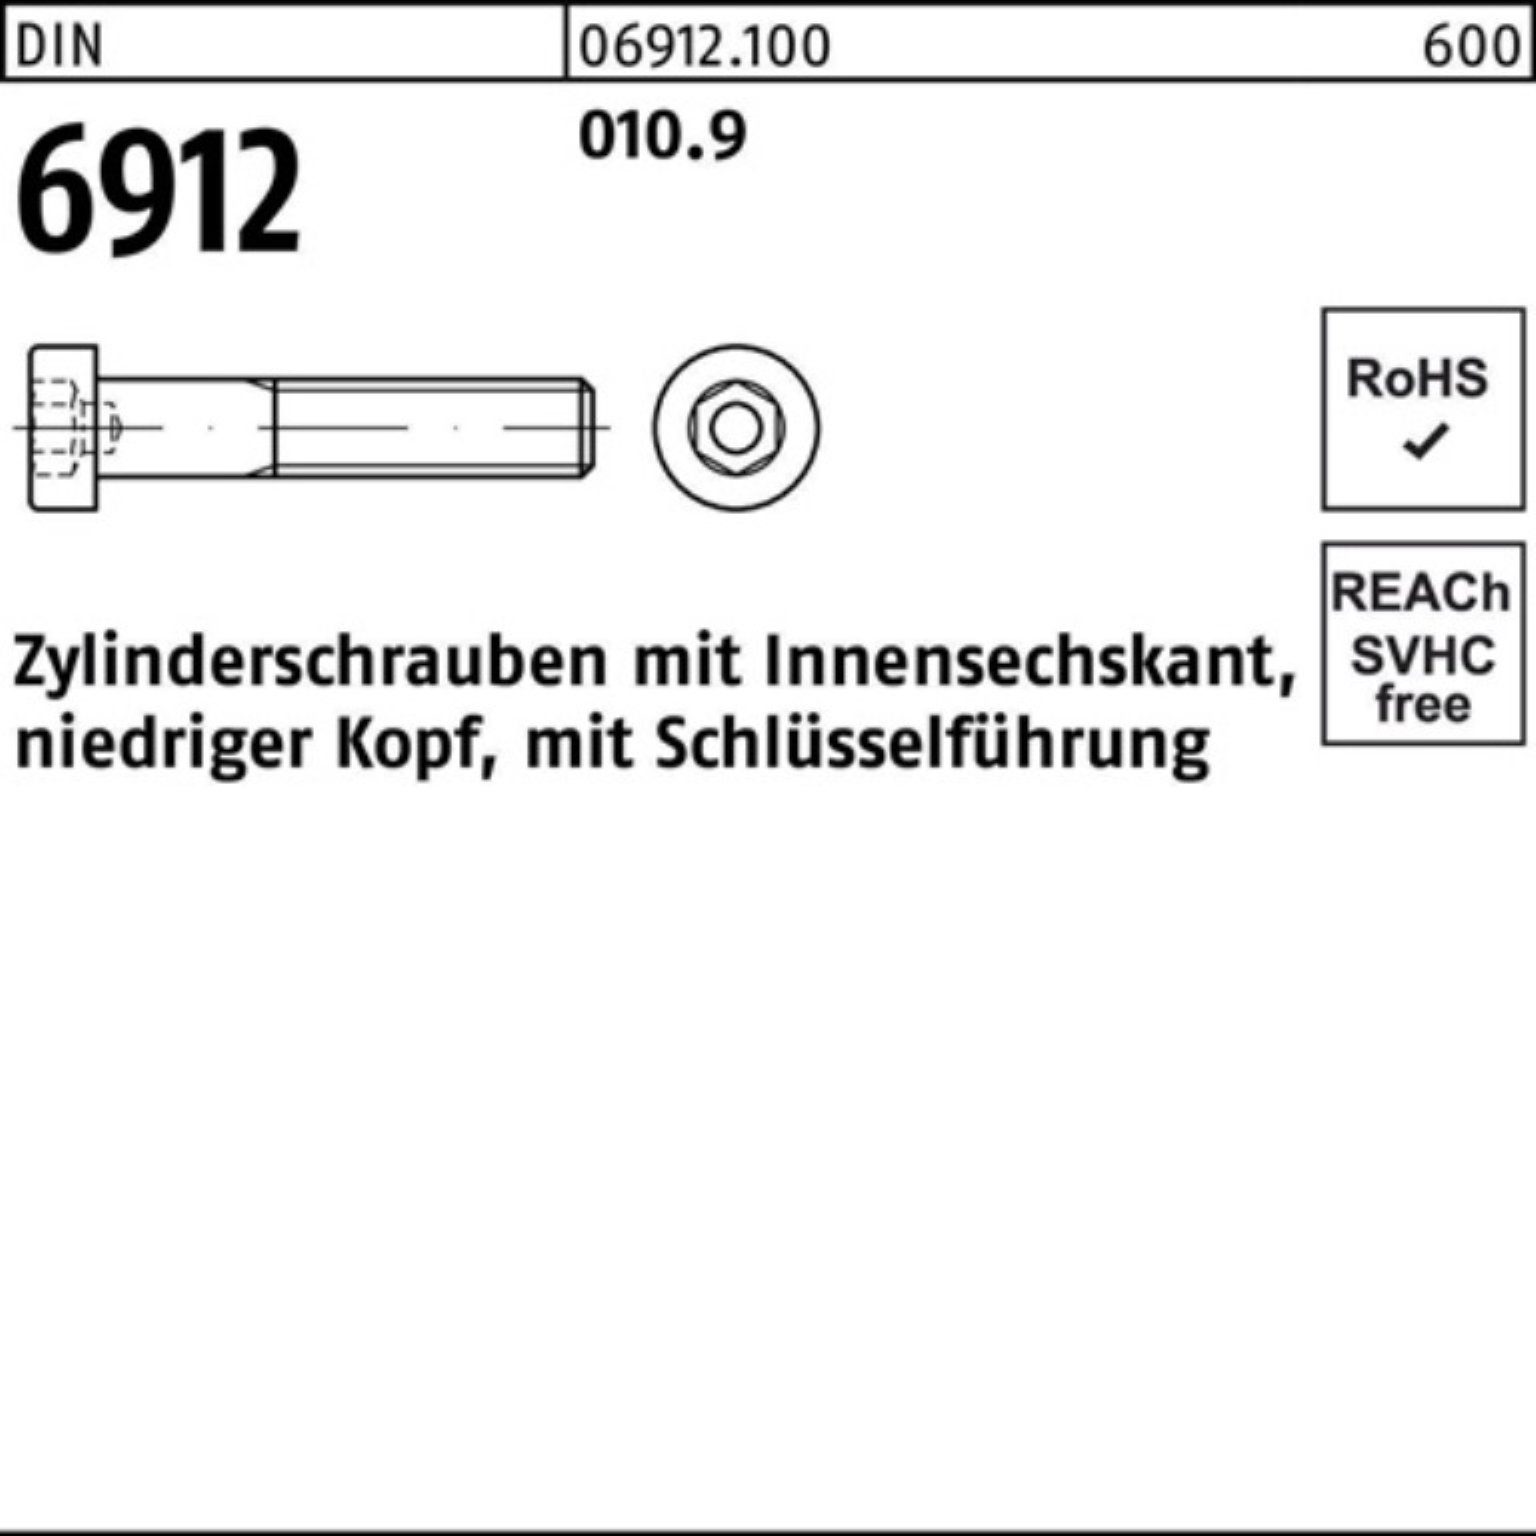 Reyher Zylinderschraube 100er 45 100 Innen-6kt M10x Zylinderschraube 6912 010.9 DIN Stüc Pack